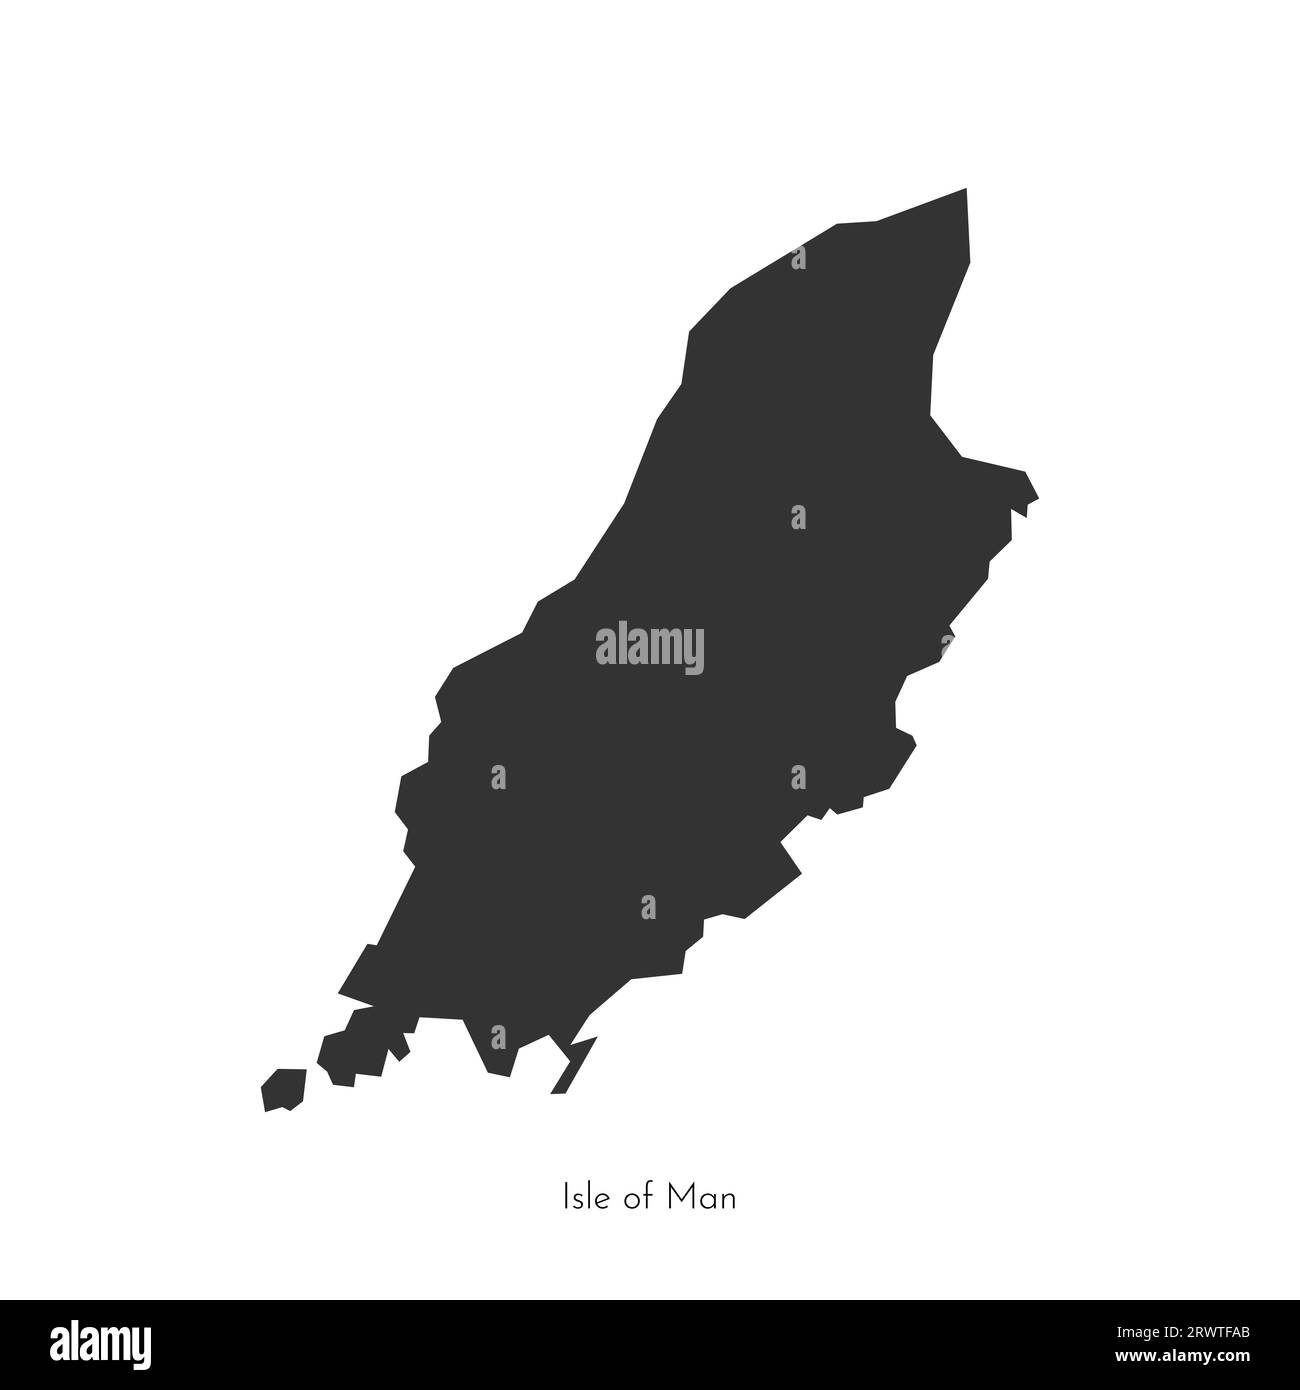 Illustrazione piatta isolata vettoriale con mappa nera semplificata dell'Isola di Man (Regno Unito). Forma geometrica dell'isola grigio scuro (Mann, Cro britannico autonomo Illustrazione Vettoriale